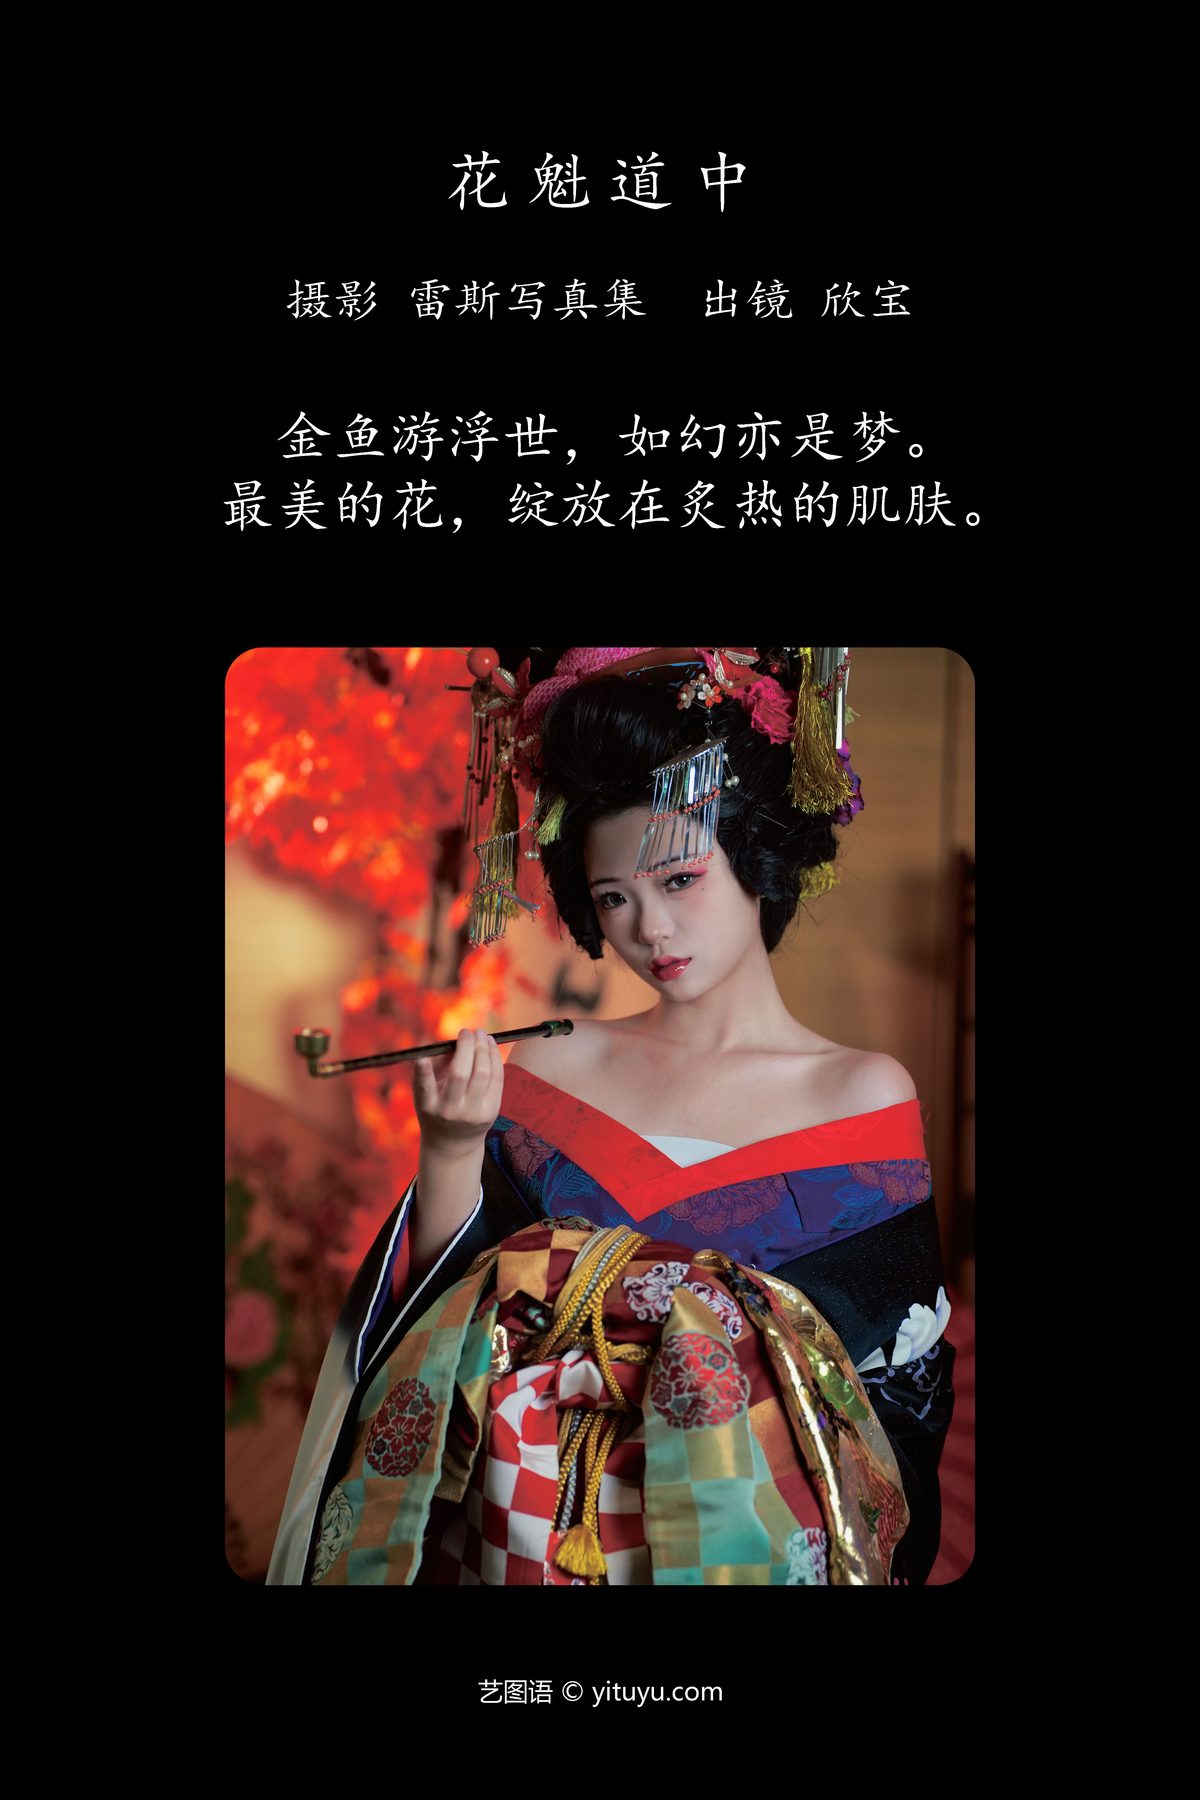 YiTuYu艺图语 Vol 5009 Xin Bao Xin Bao Tian Tian Chi Bao 0001 8723361772.jpg